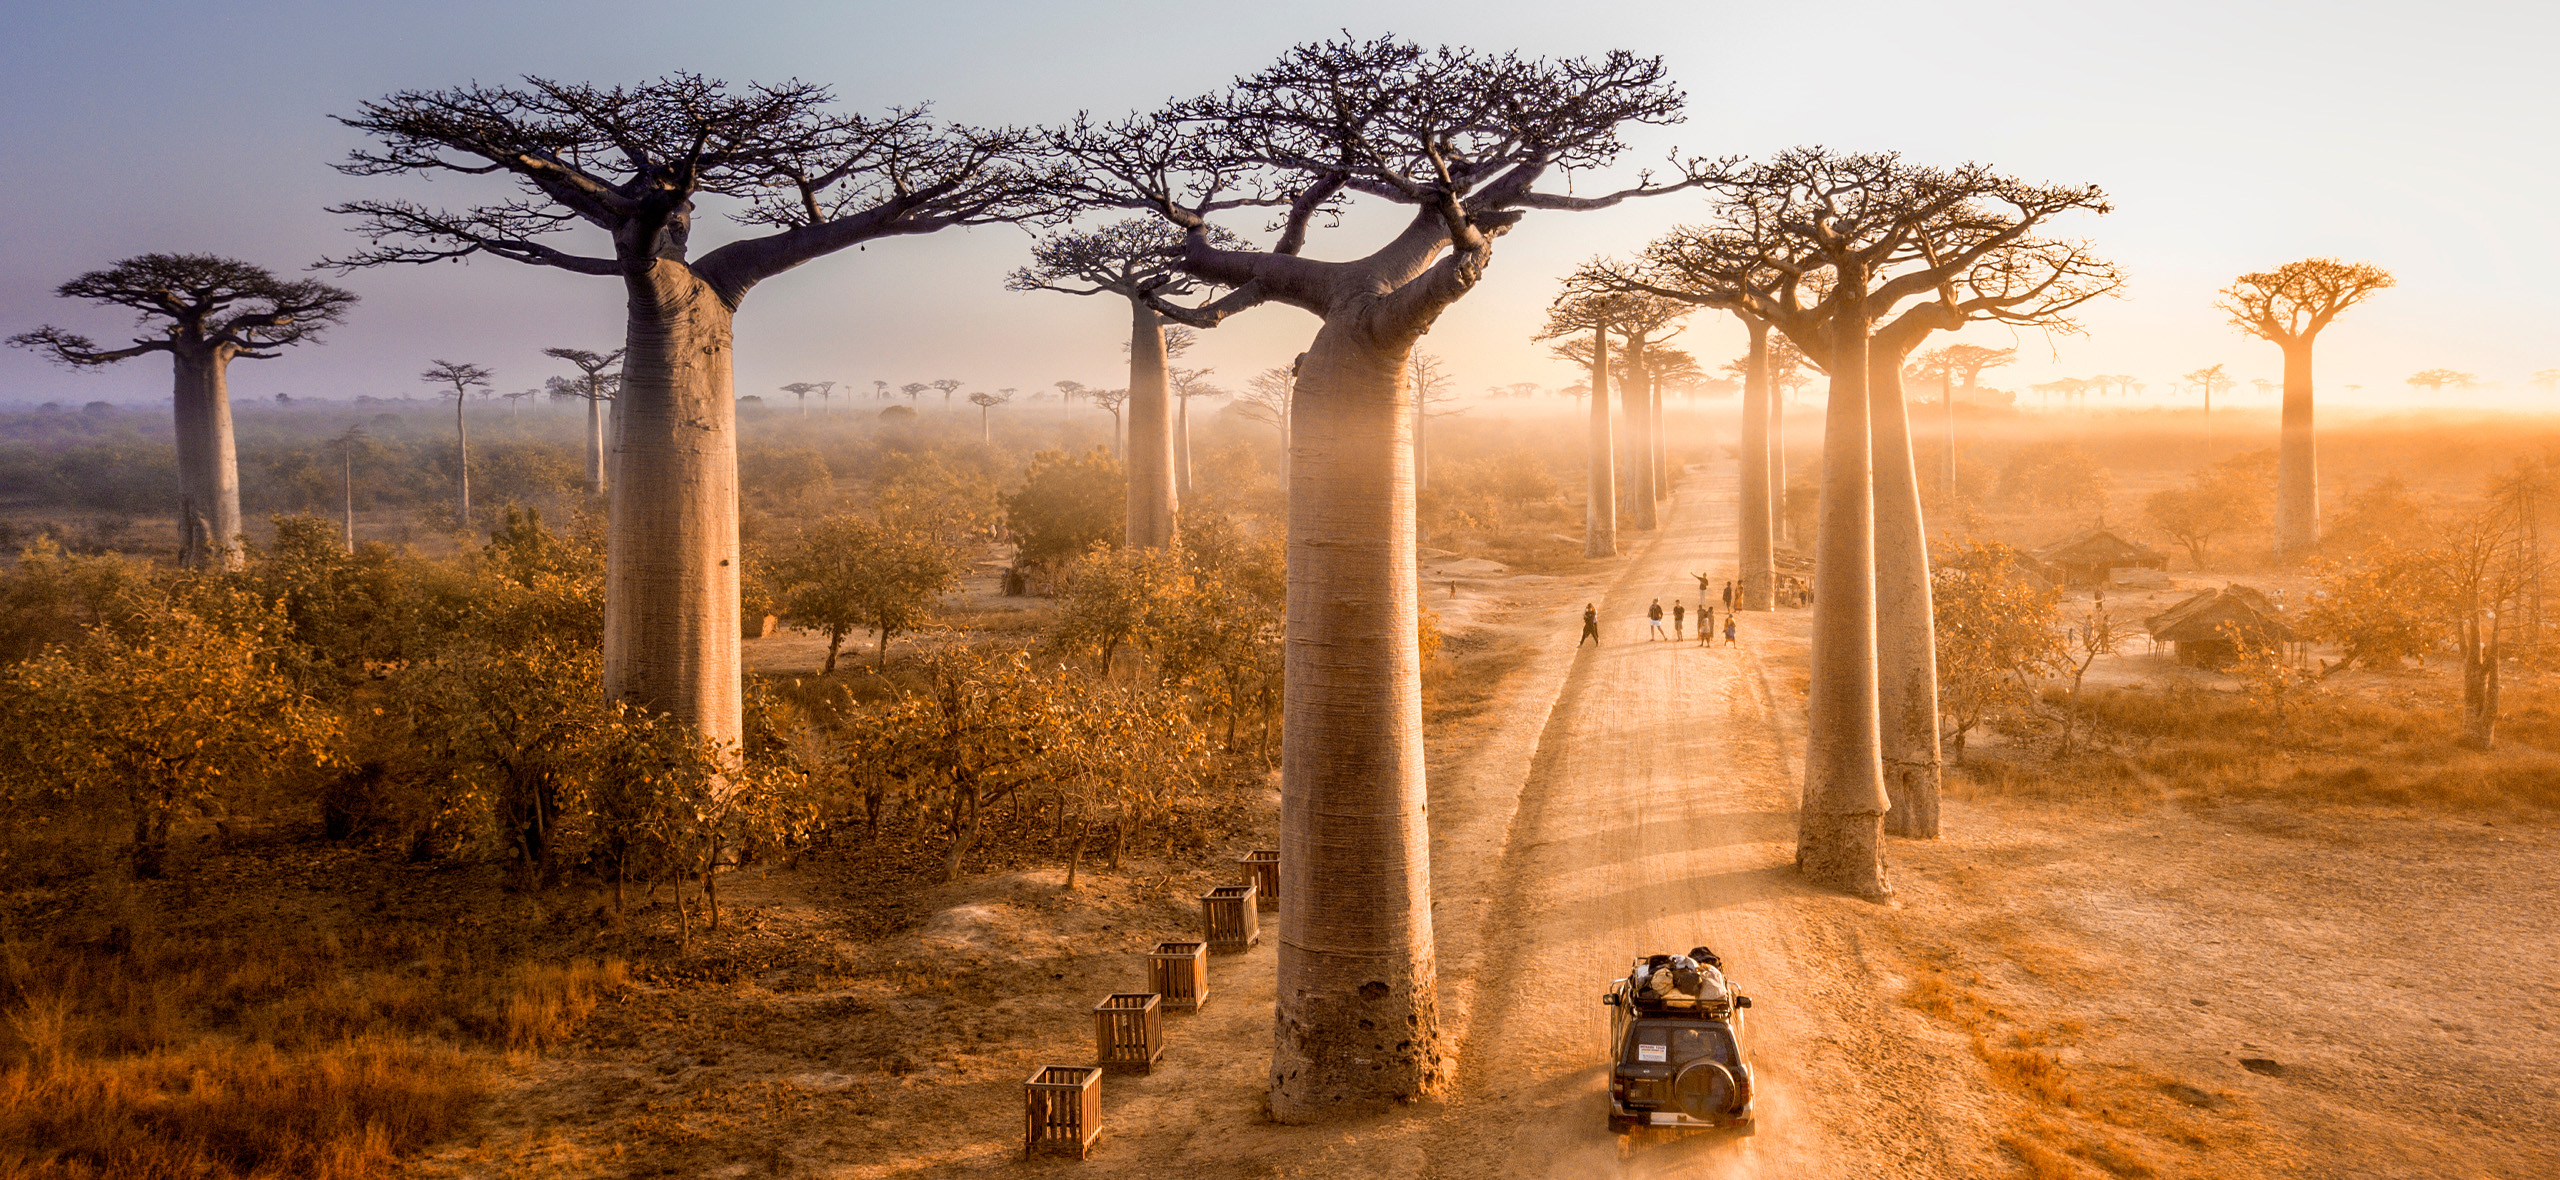 Как организовать потрясающее путешествие по Мадагаскару